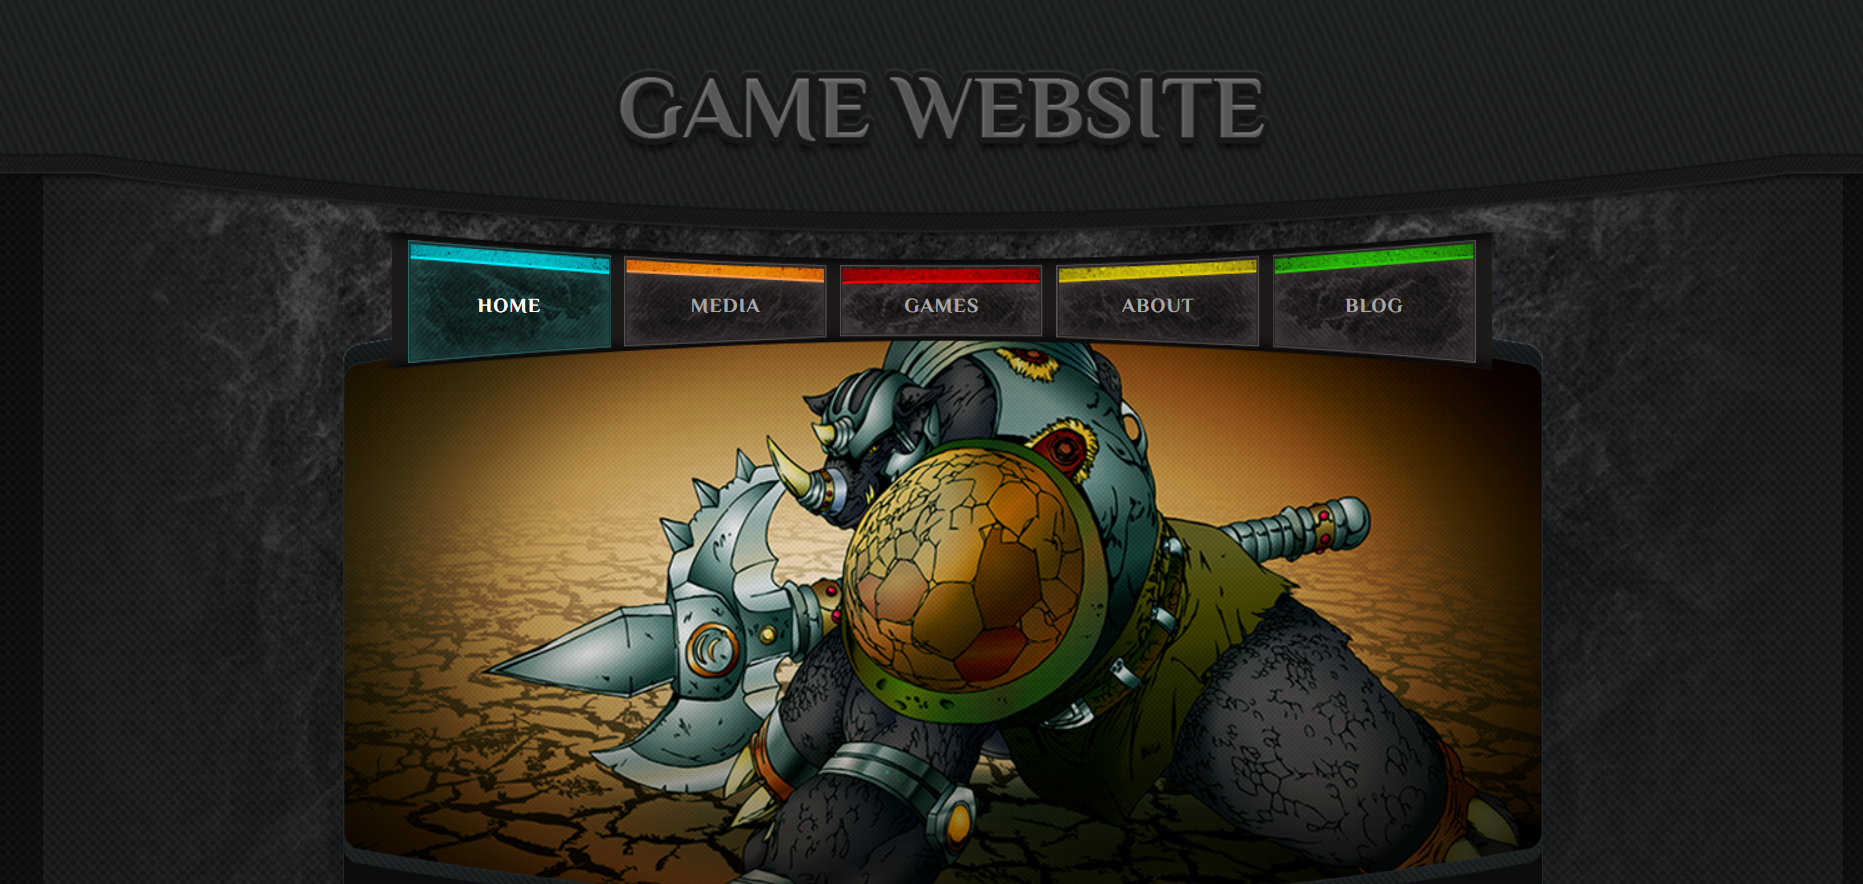 Game Website легкий красивый шаблон для создания игрового веб-сайта